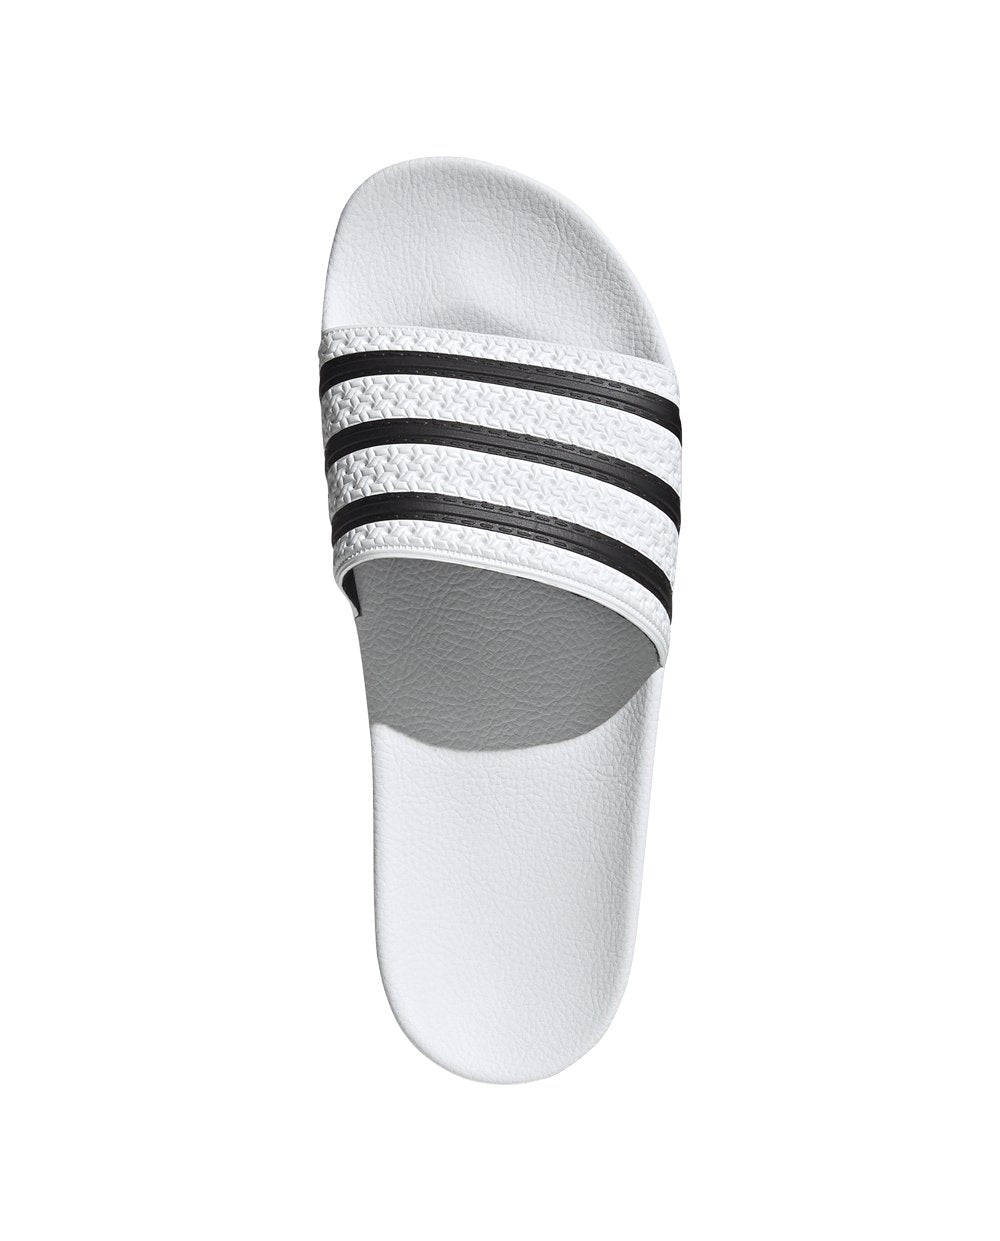 Adidas Adilette Brancos com Riscas Pretas